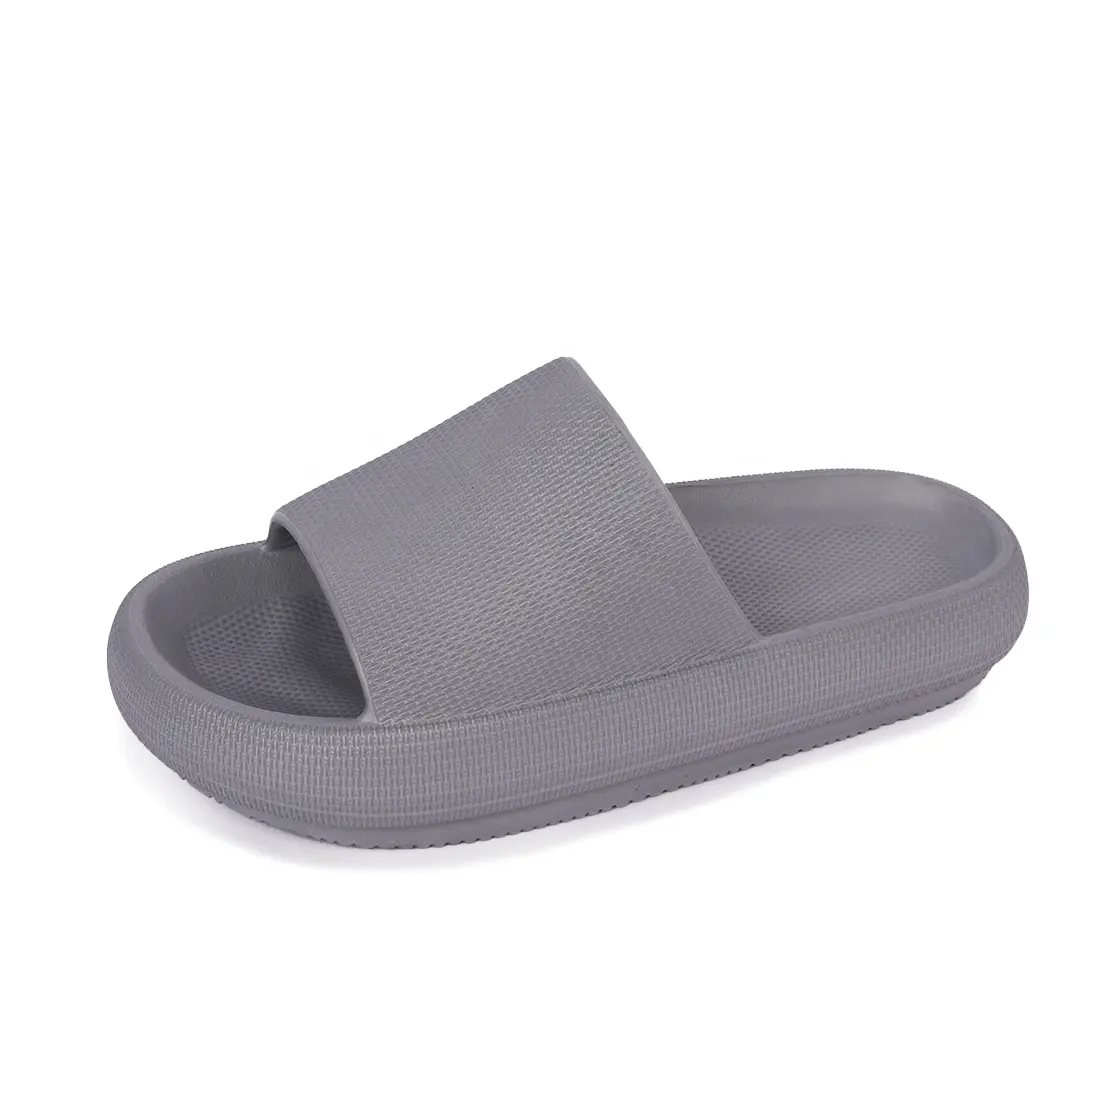 Sandali donna HEVA Comfort scarpe da ginnastica diapositive cuscino personalizzato senza tempo doccia bagno sport casa cursori pantofole per gli uomini